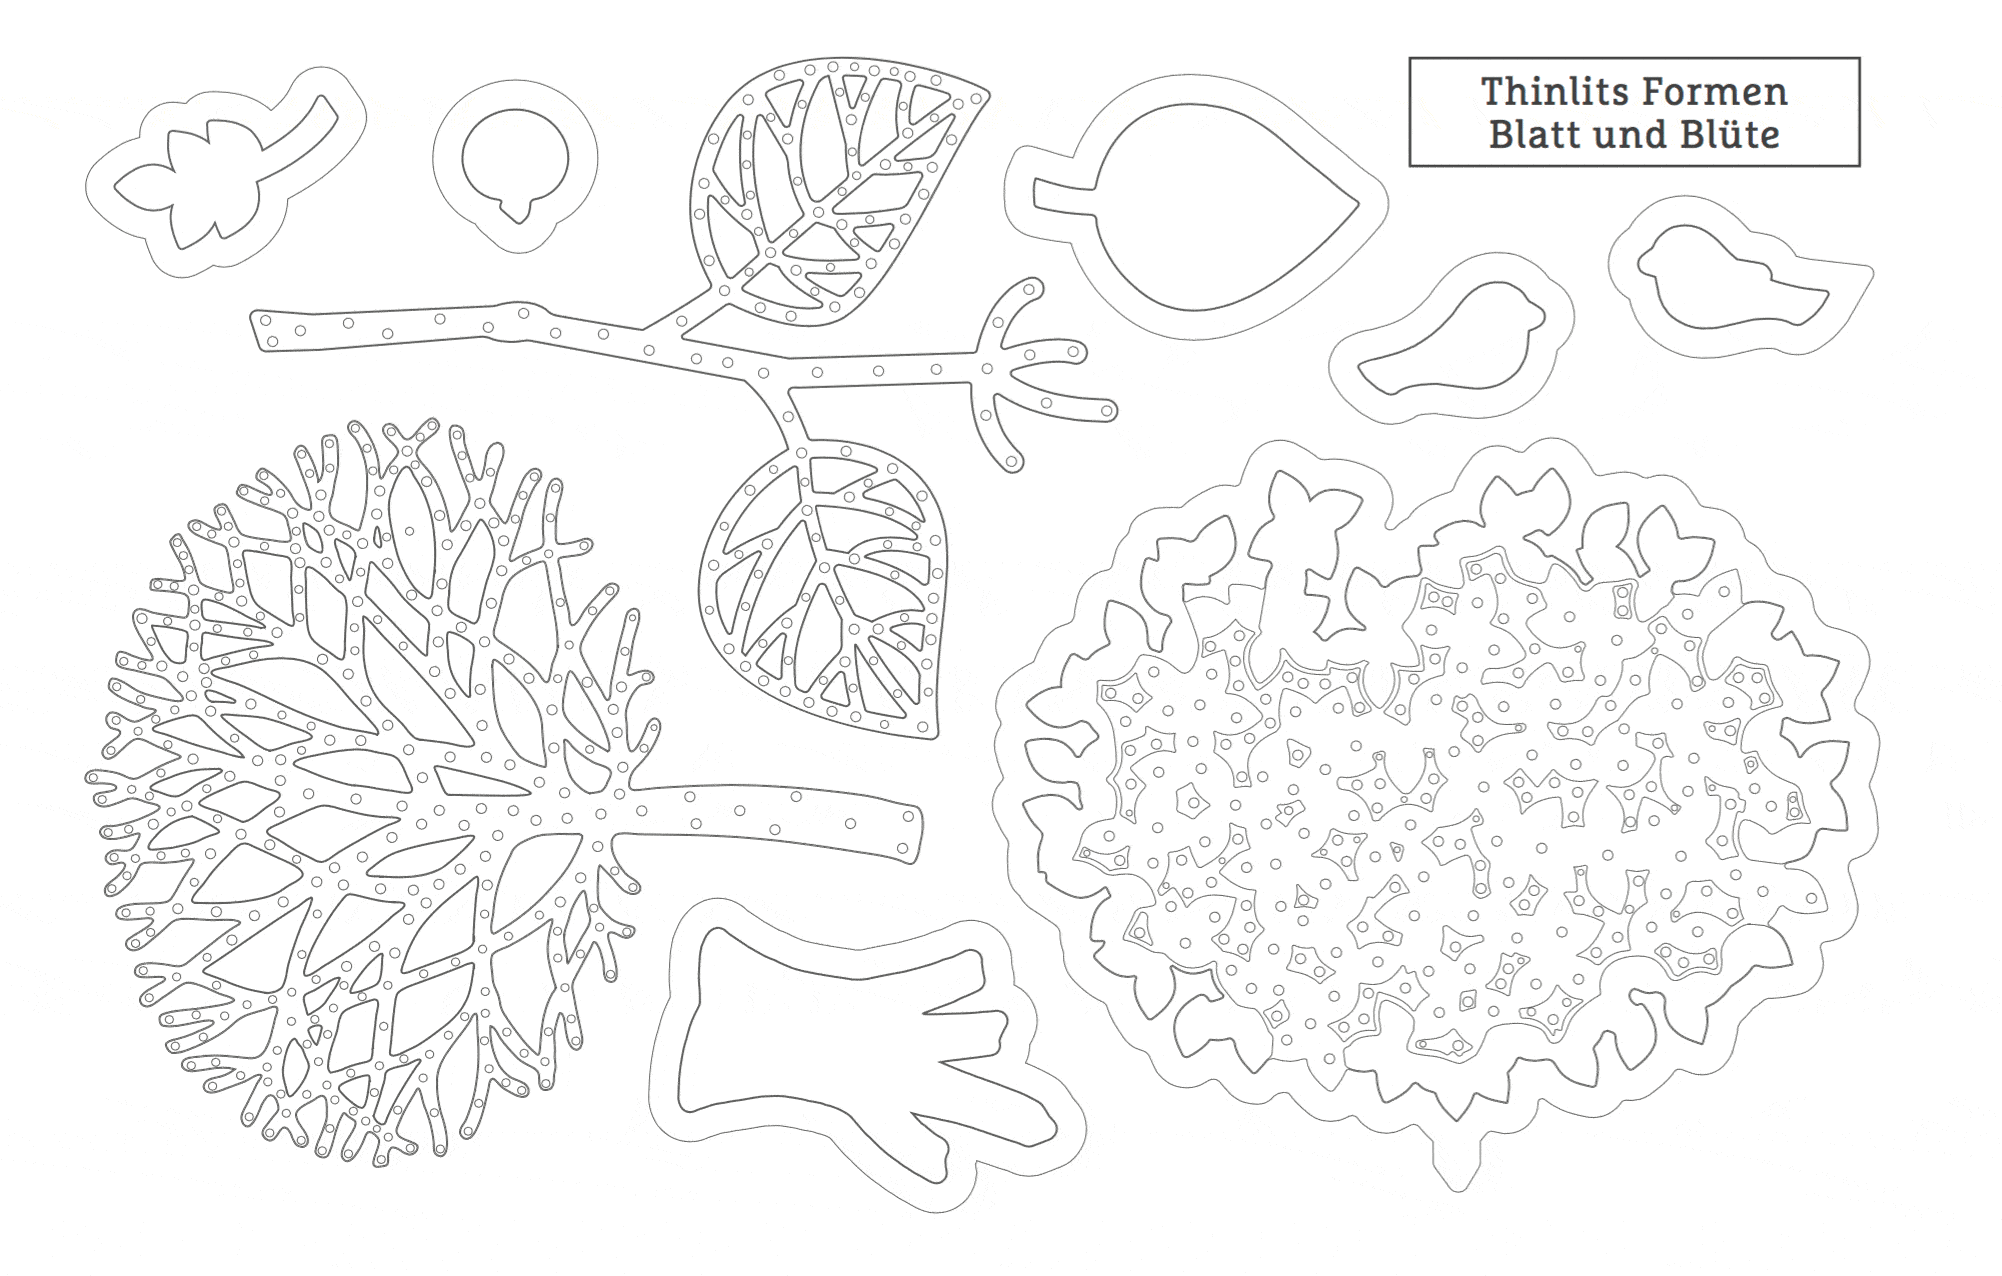 Thinlits Formen Blatt und Blüte